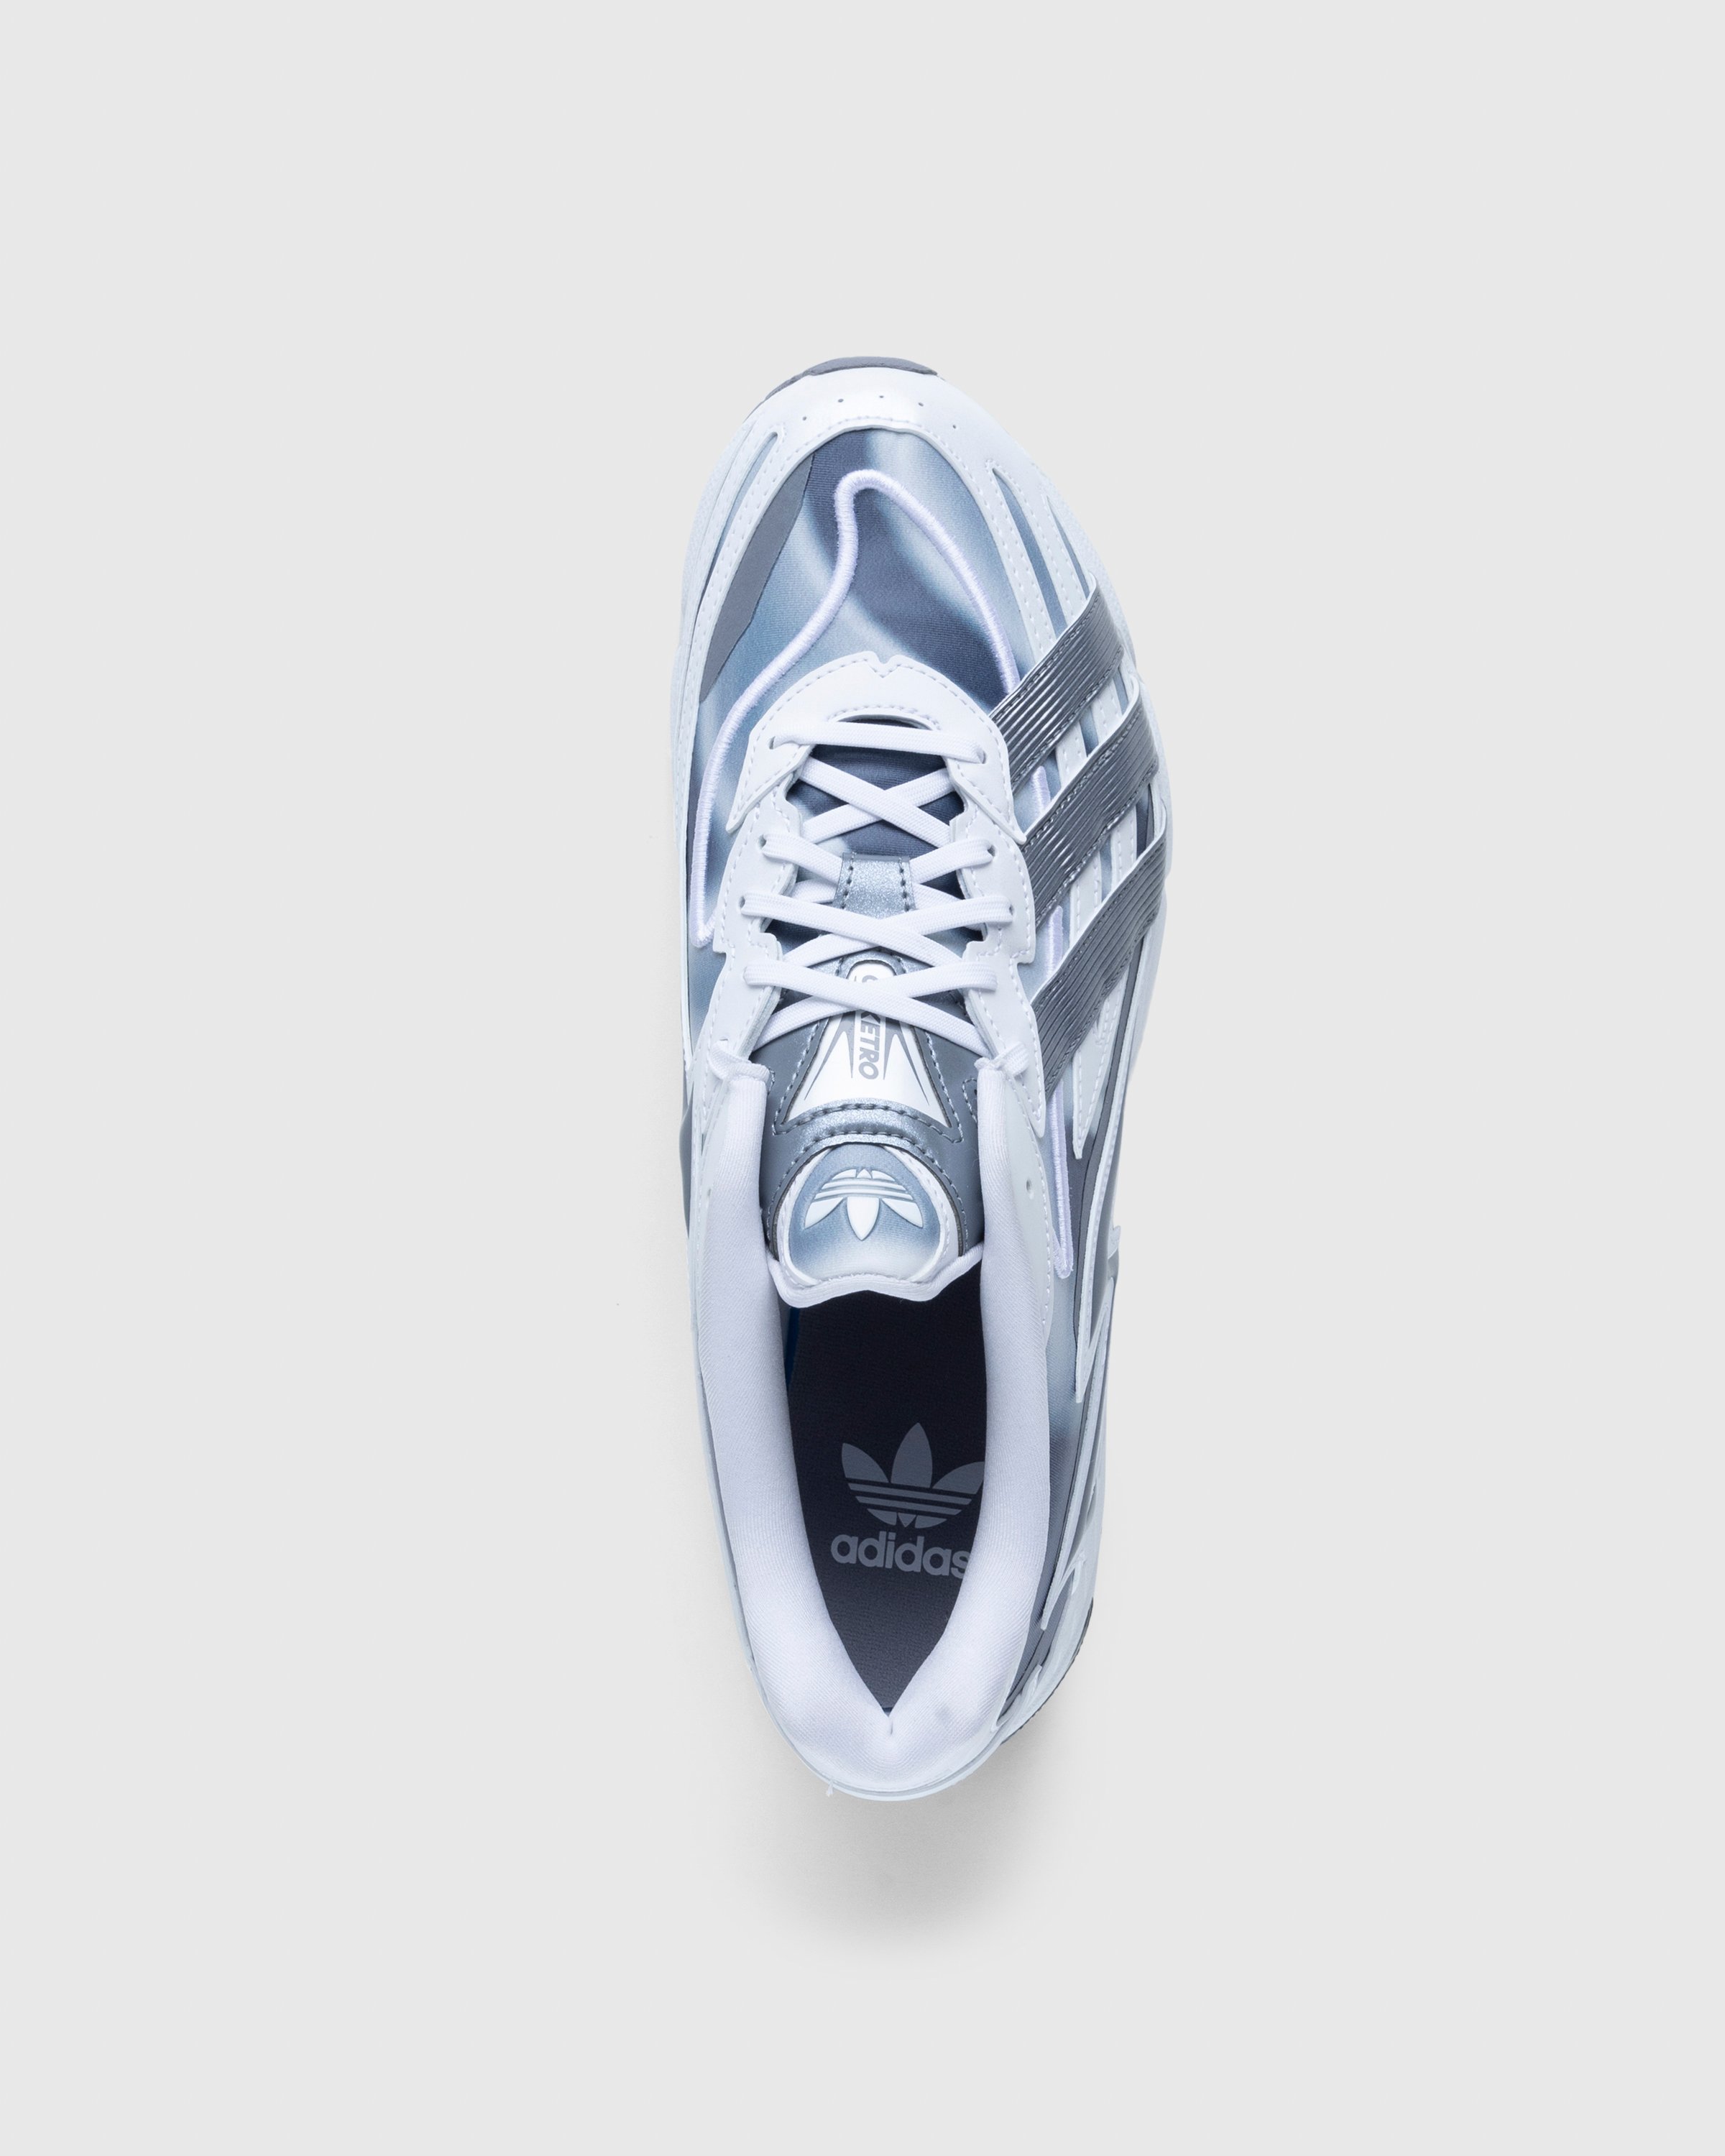 Adidas - Orketro White - Footwear - White - Image 5